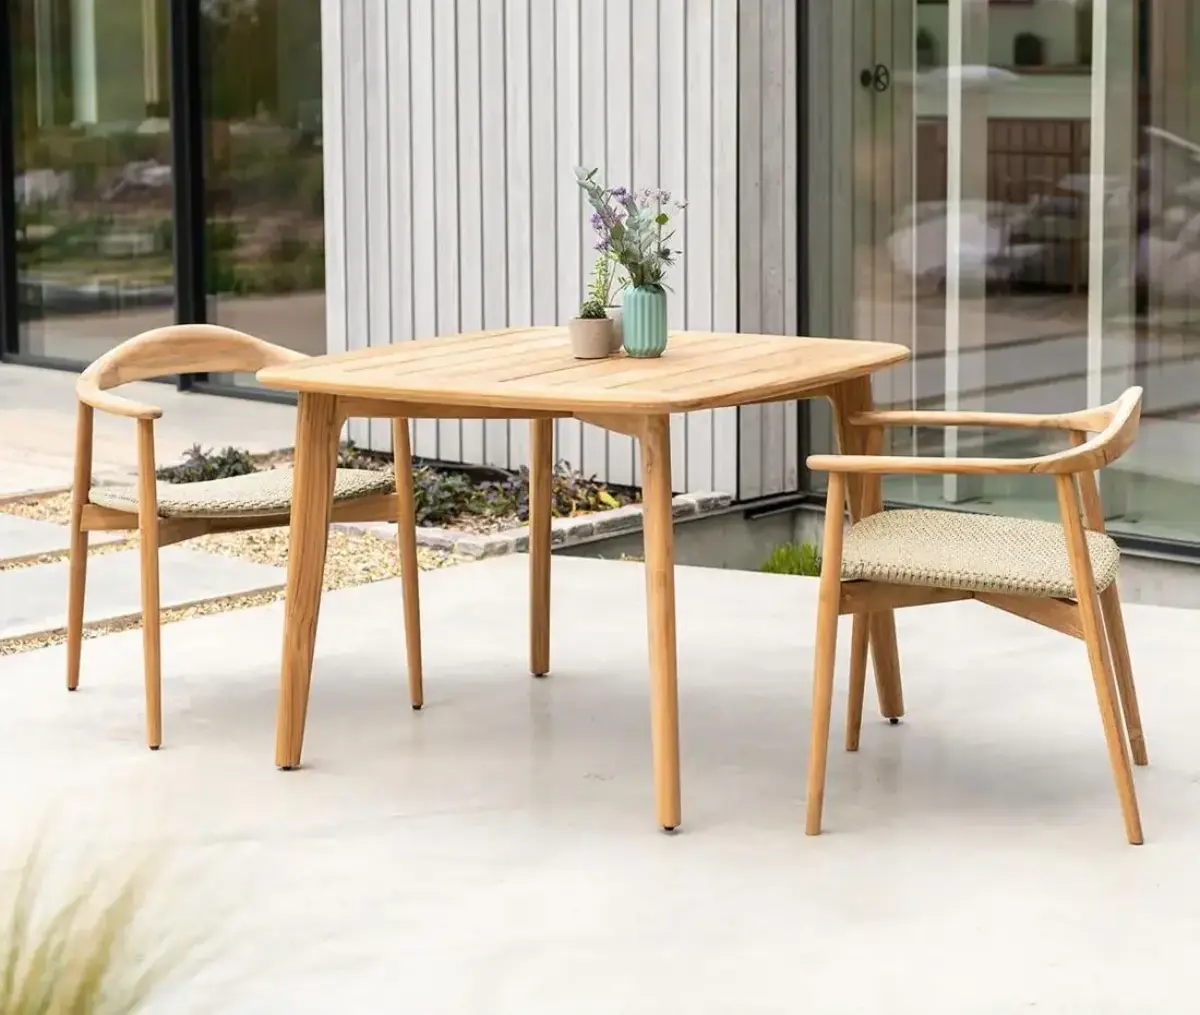 Danish Classic Outdoor Furniture